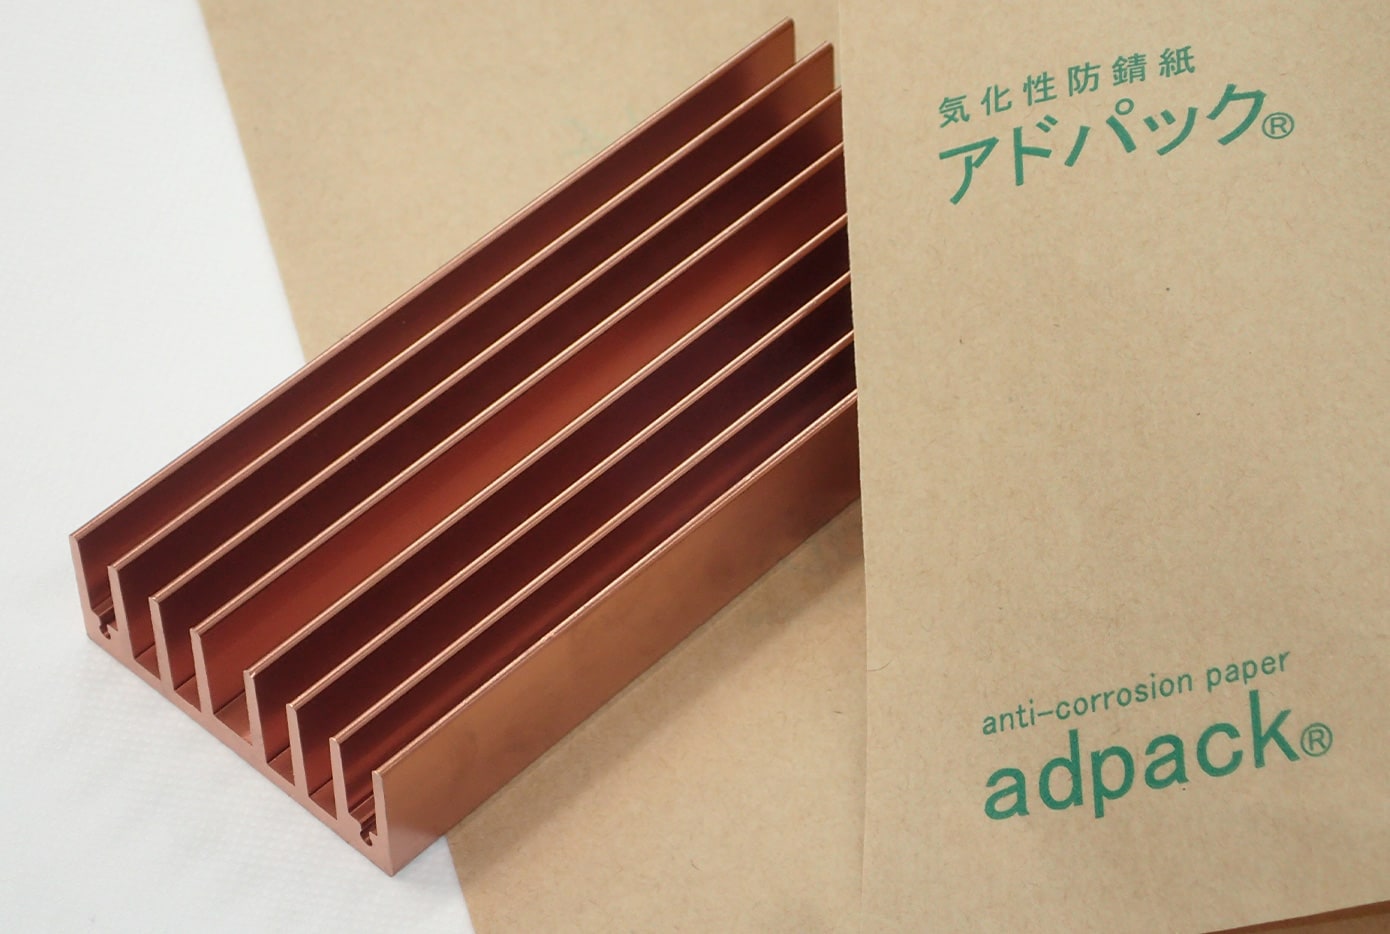 アドパックC（銅・銅合金用含浸タイプ）|金属製品の錆止めに効果的な気化性防錆紙【adpack】ならアドコート株式会社